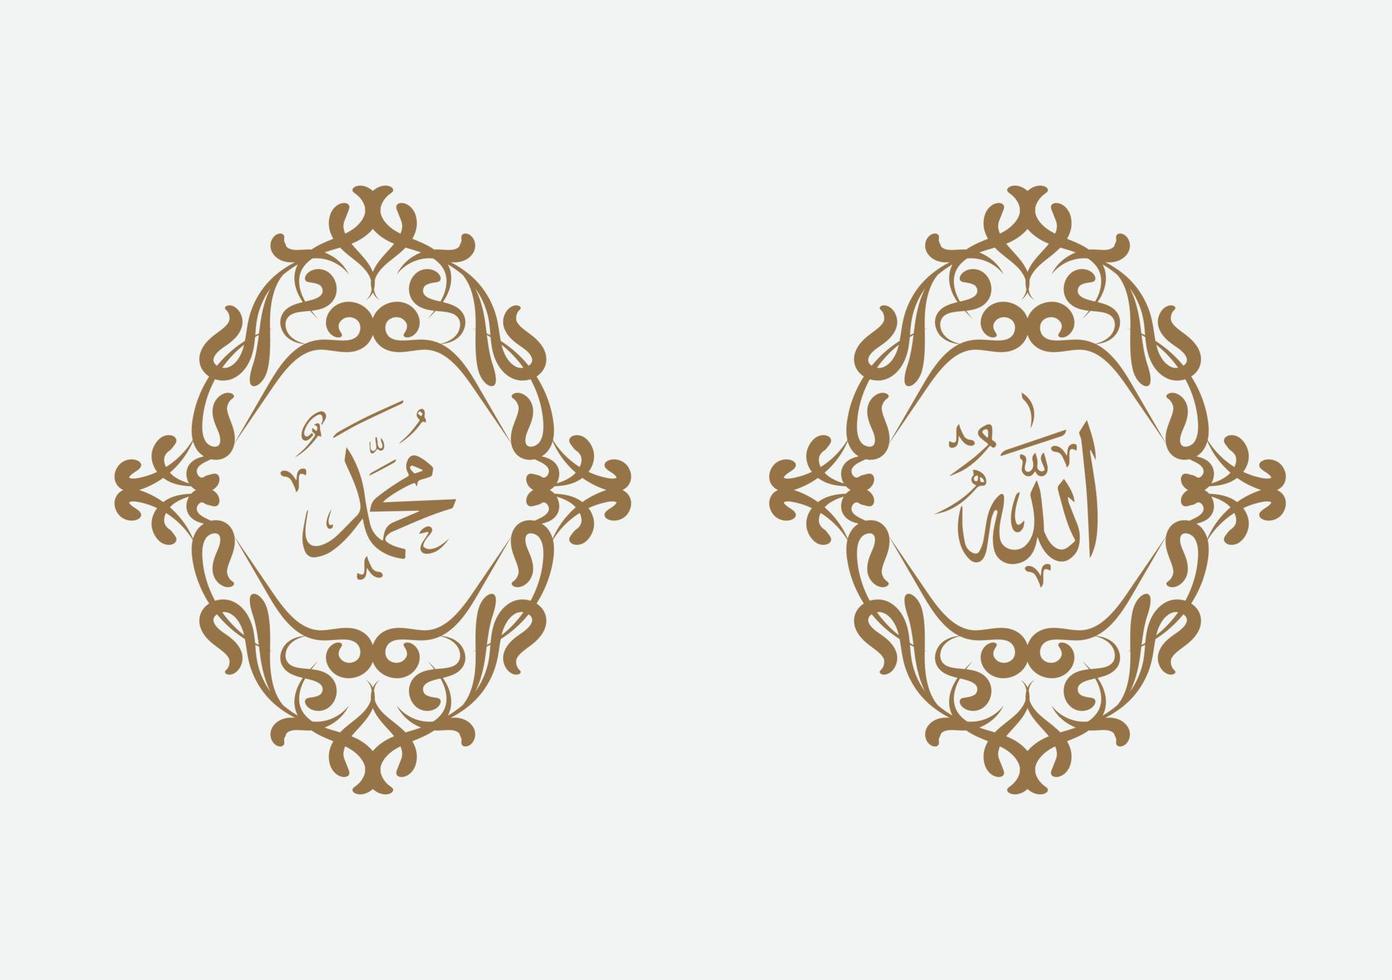 allah muhammad caligrafia árabe com moldura vintage e cor moderna vetor